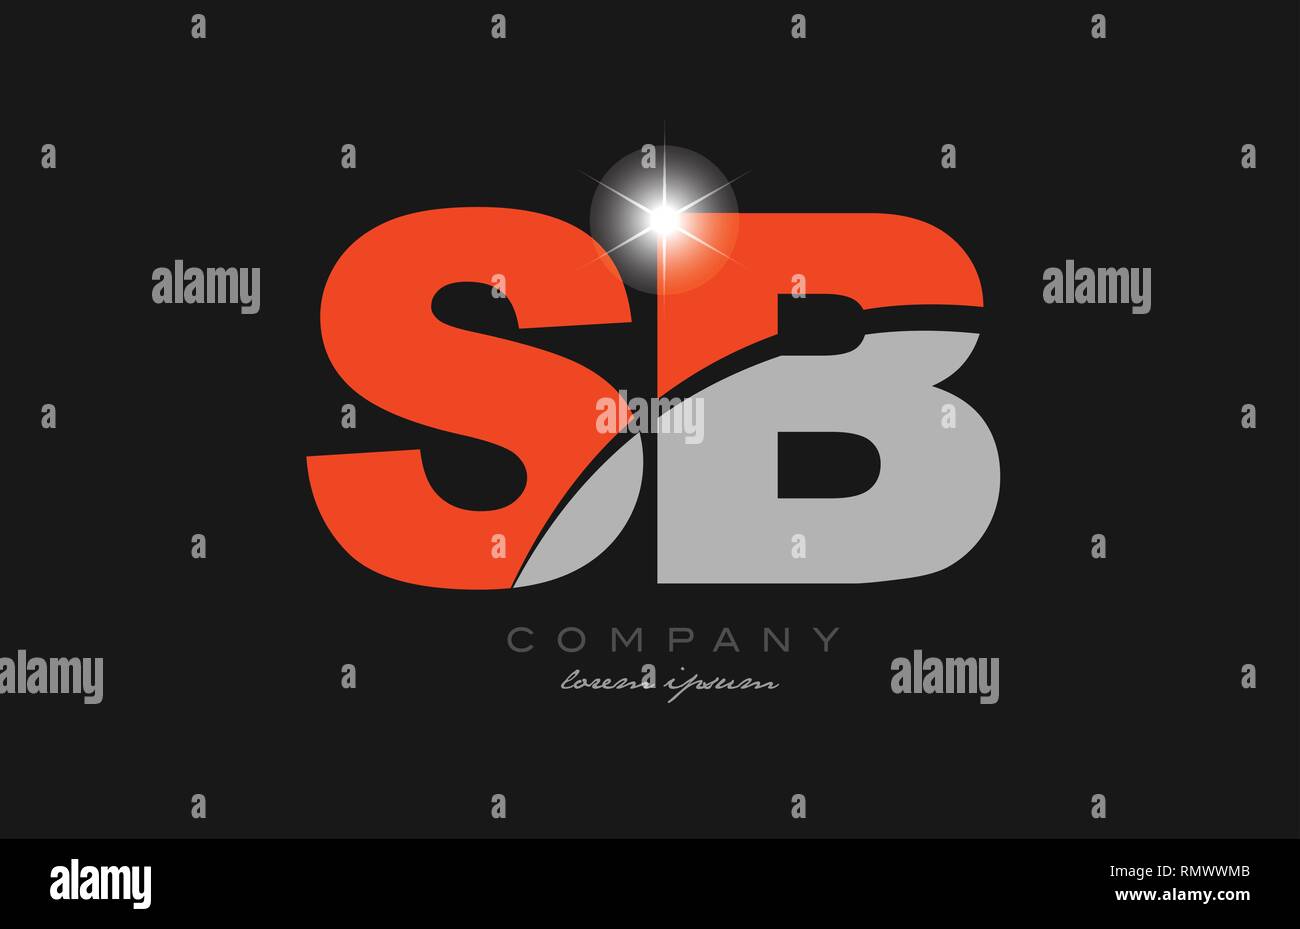 Kombination schreiben sb s b in grauer Farbe orange Alphabet logo Icon Design geeignet für ein Unternehmen oder ein Geschäft Stock Vektor